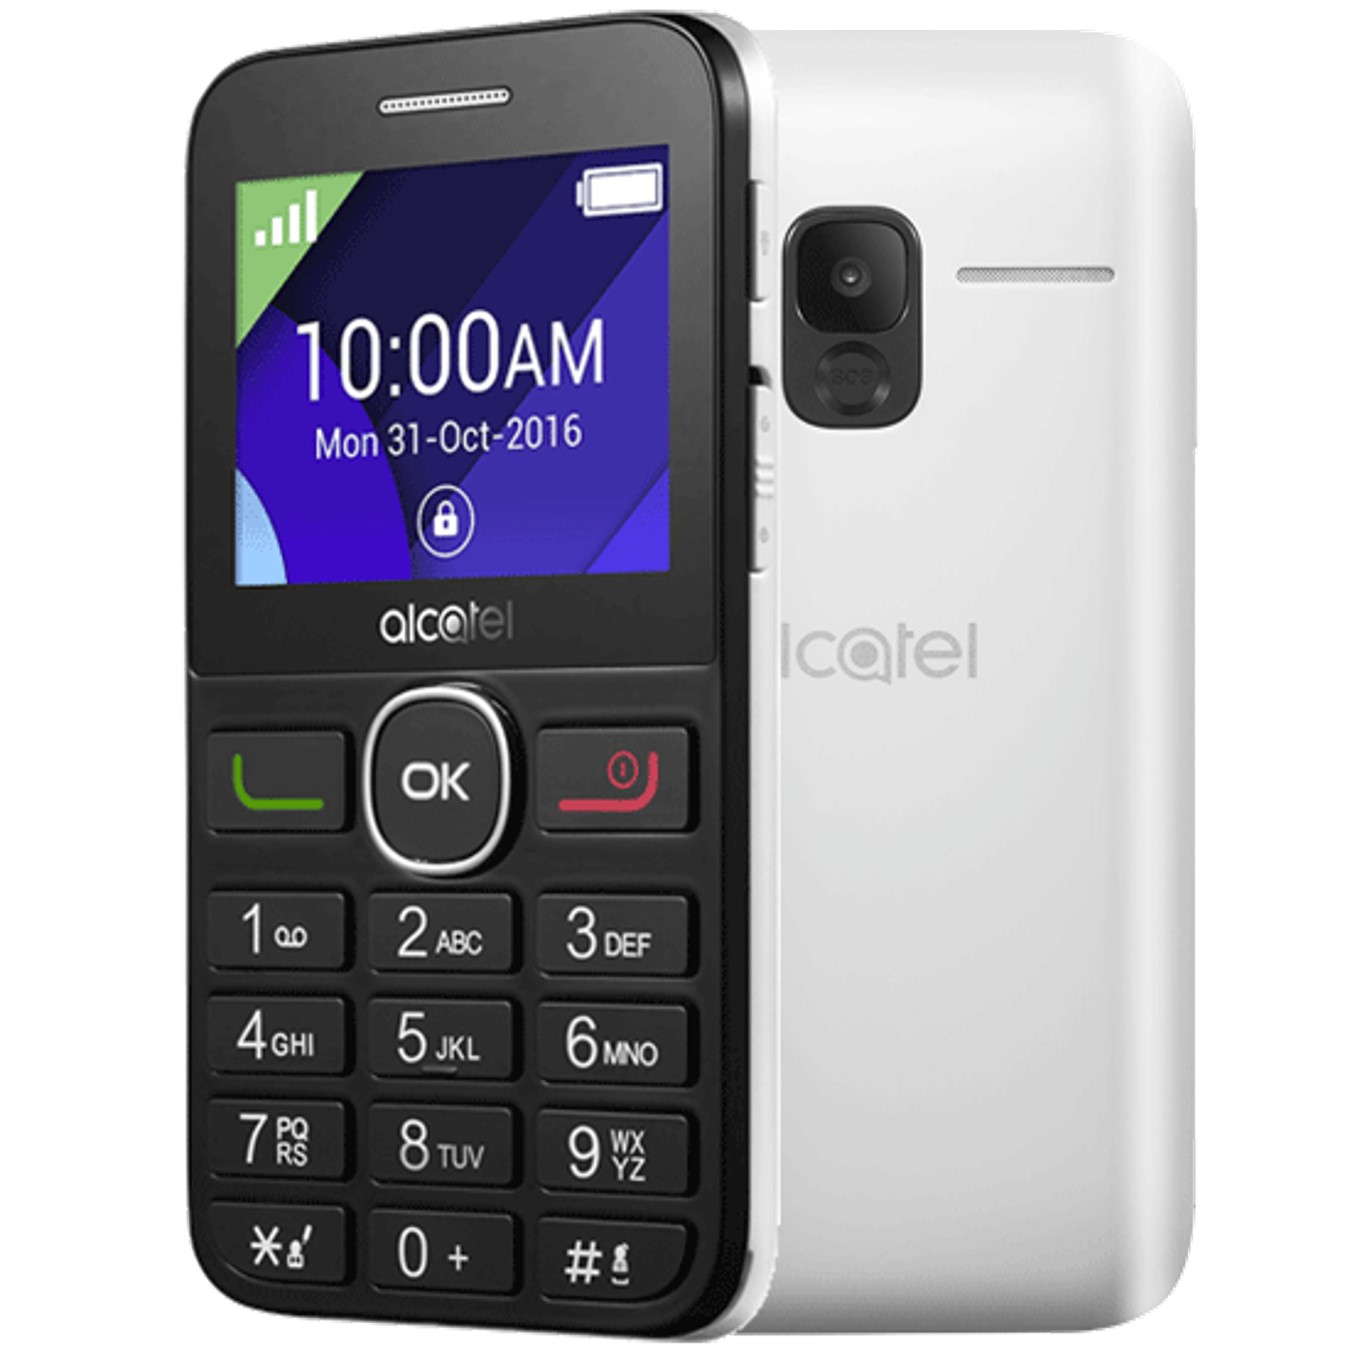 Telefono movil alcatel 2008 blanco - 2.4pulgadas - 16mb rom - 8mb ram - single sim